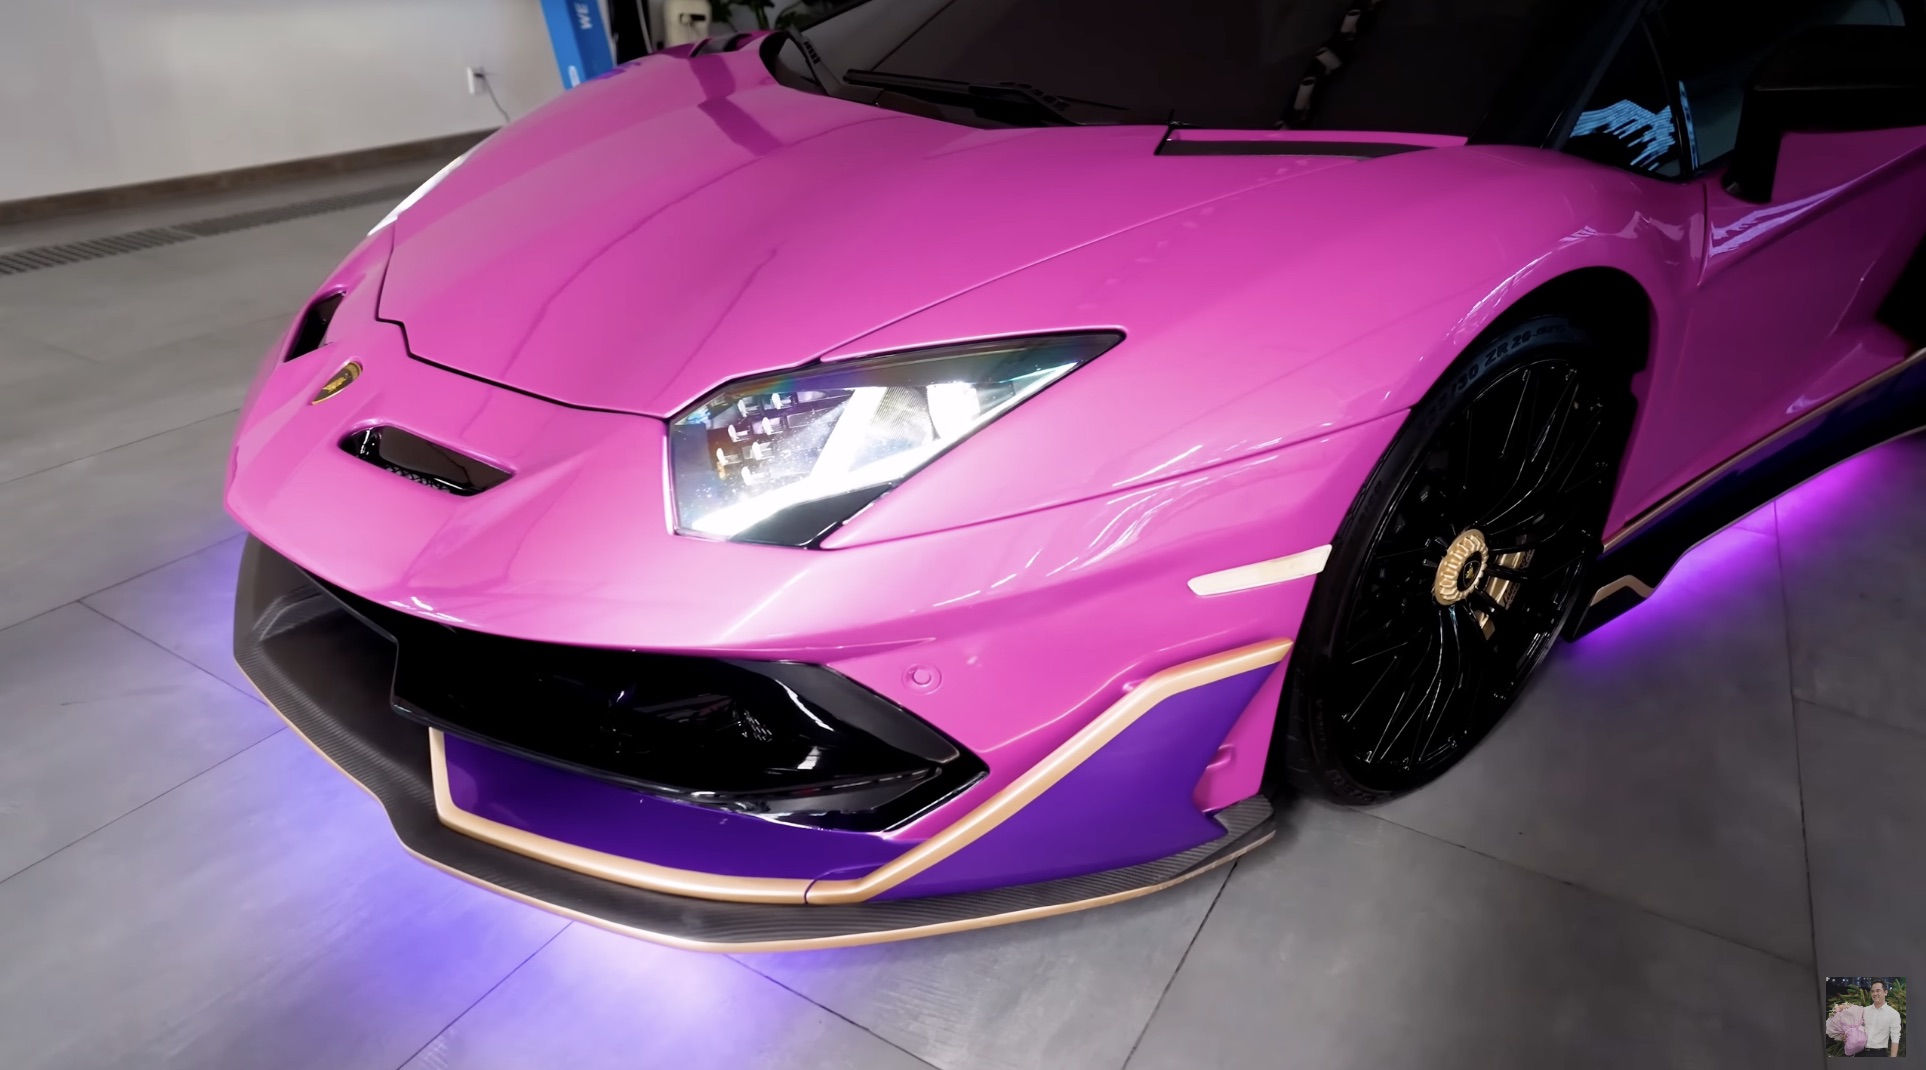 Chủ xe Lamborghini Aventador đưa yêu cầu độ khó, chủ xưởng tại TP. HCM nhăn mặt nhưng kết quả mỹ mãn - Ảnh 3.